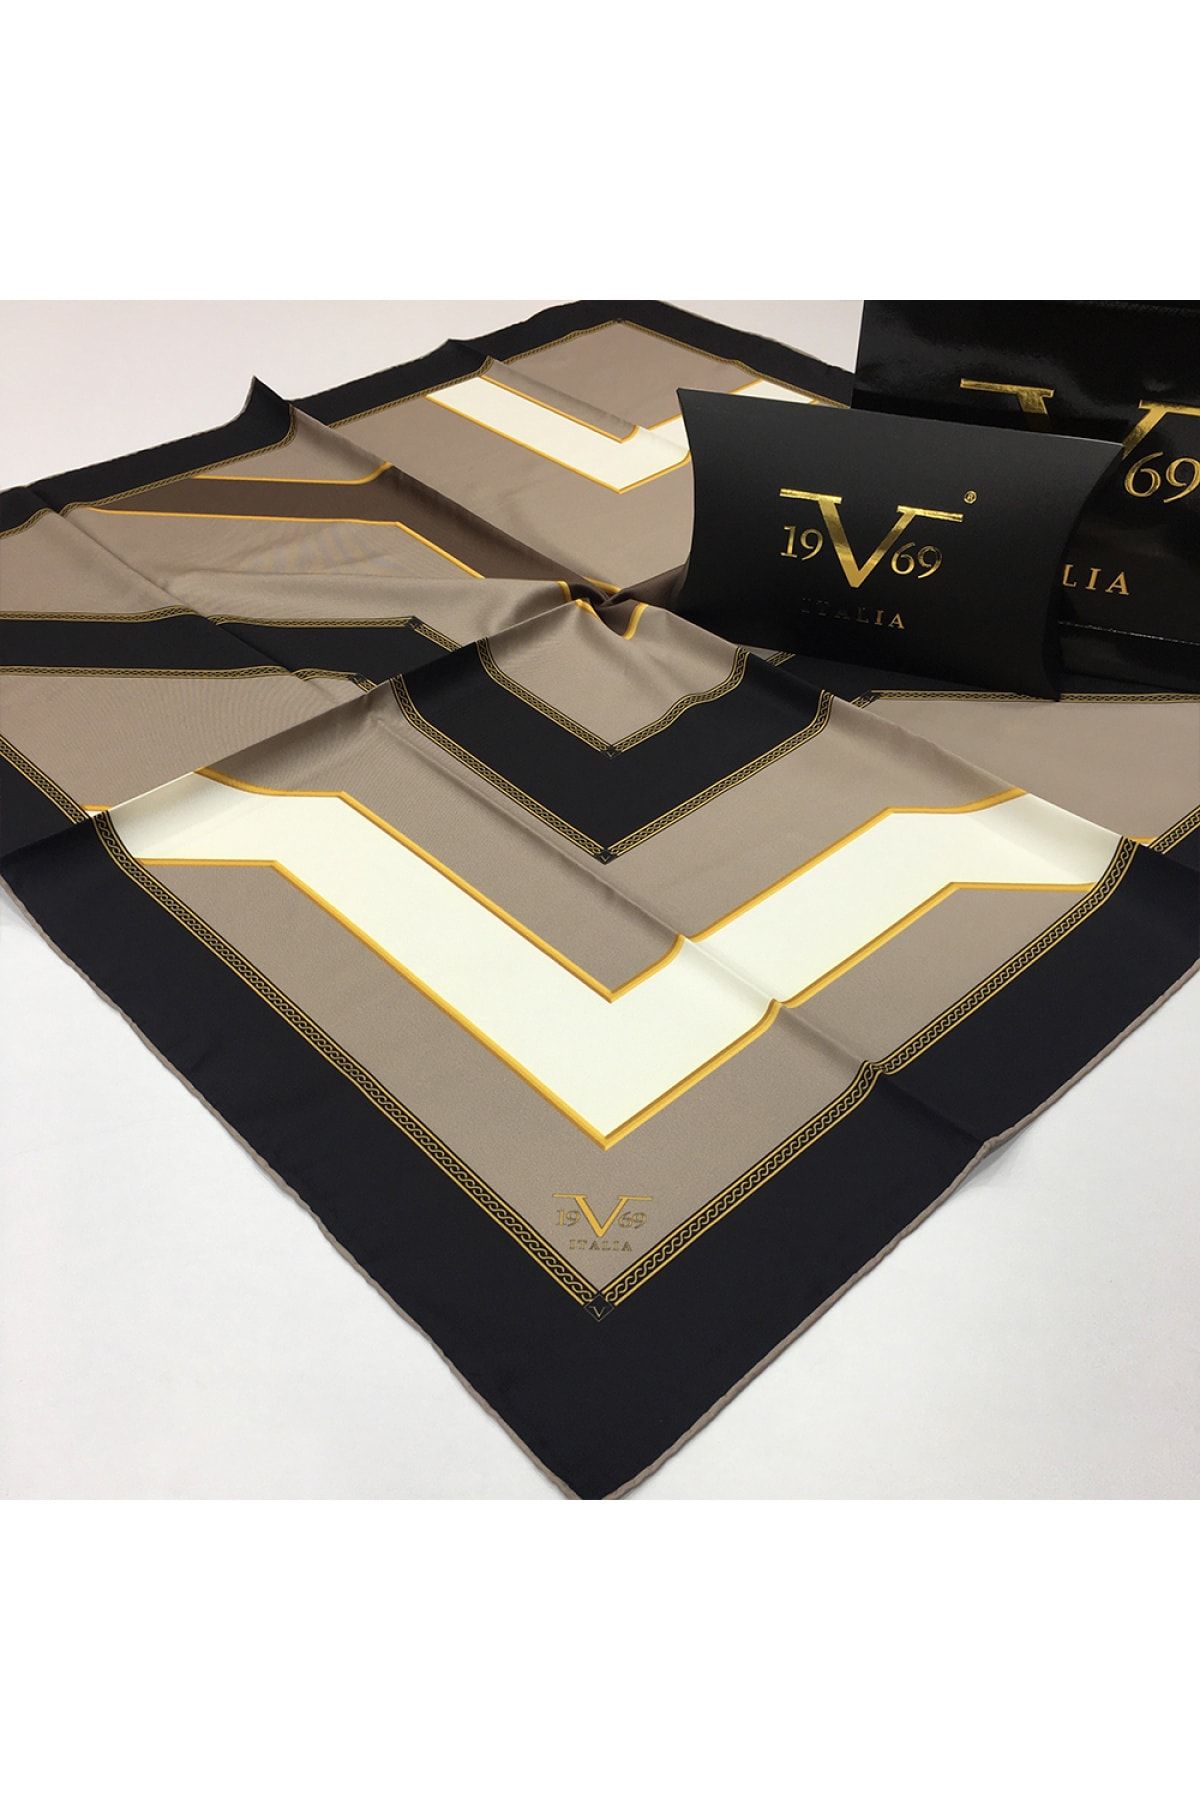 19V69 ITALIA Siyah Açık Vizon Beyaz Twill Eşarp Geometrik Desen Gold Seri Eşarp Askısı Ile Birlikte 90x90 cm